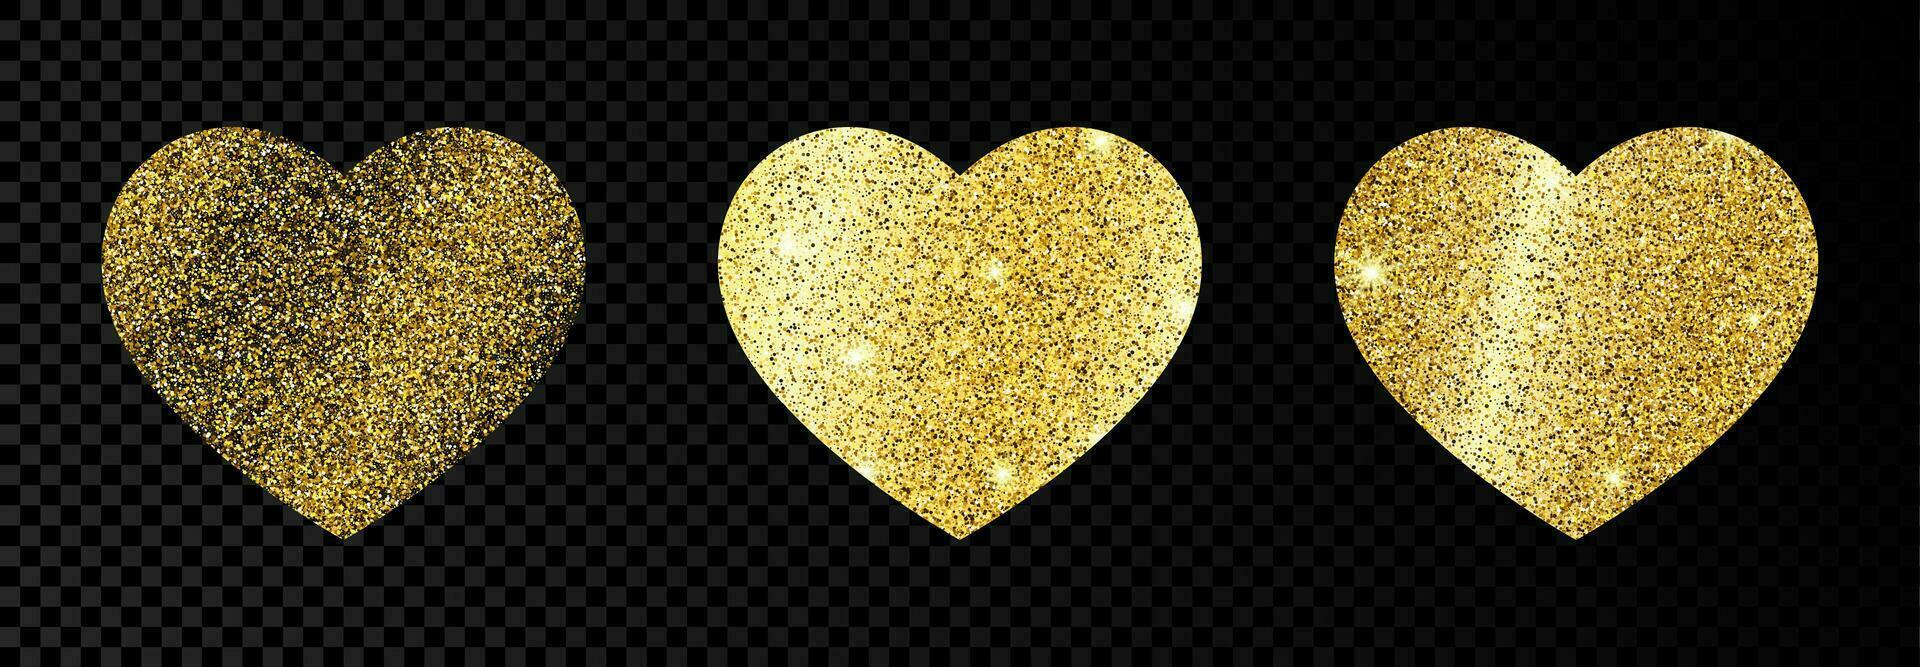 reeks van drie goud glinsterende harten Aan donker transparant achtergrond. achtergrond met goud sparkles en schitteren effect. vector illustratie